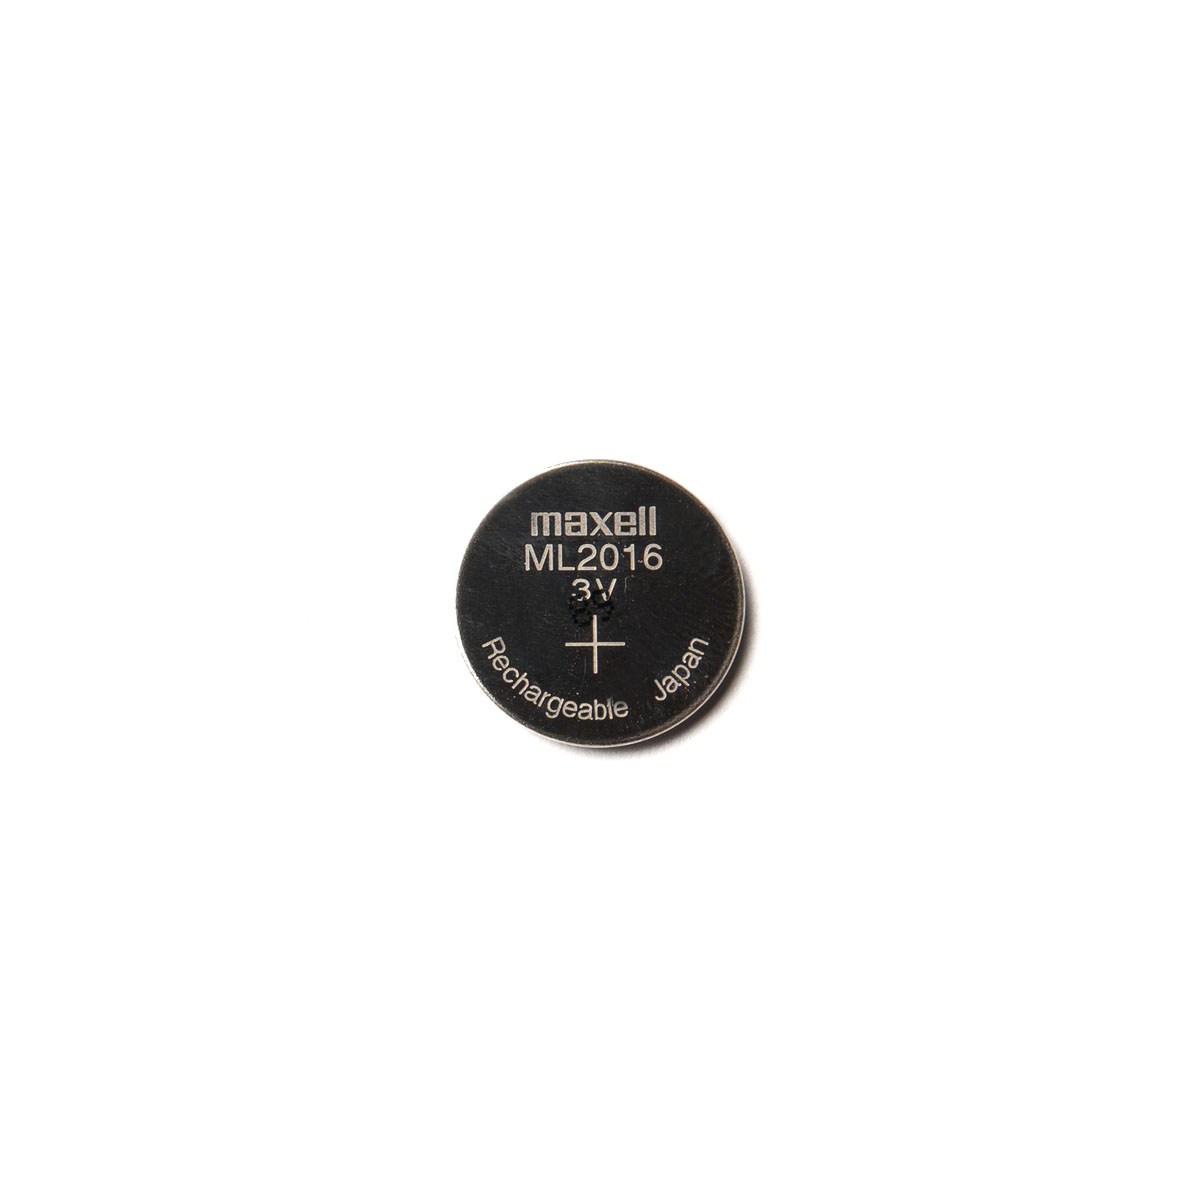 Pile bouton ML2016 CASIO / FDK rechargeable pour montre à énergie